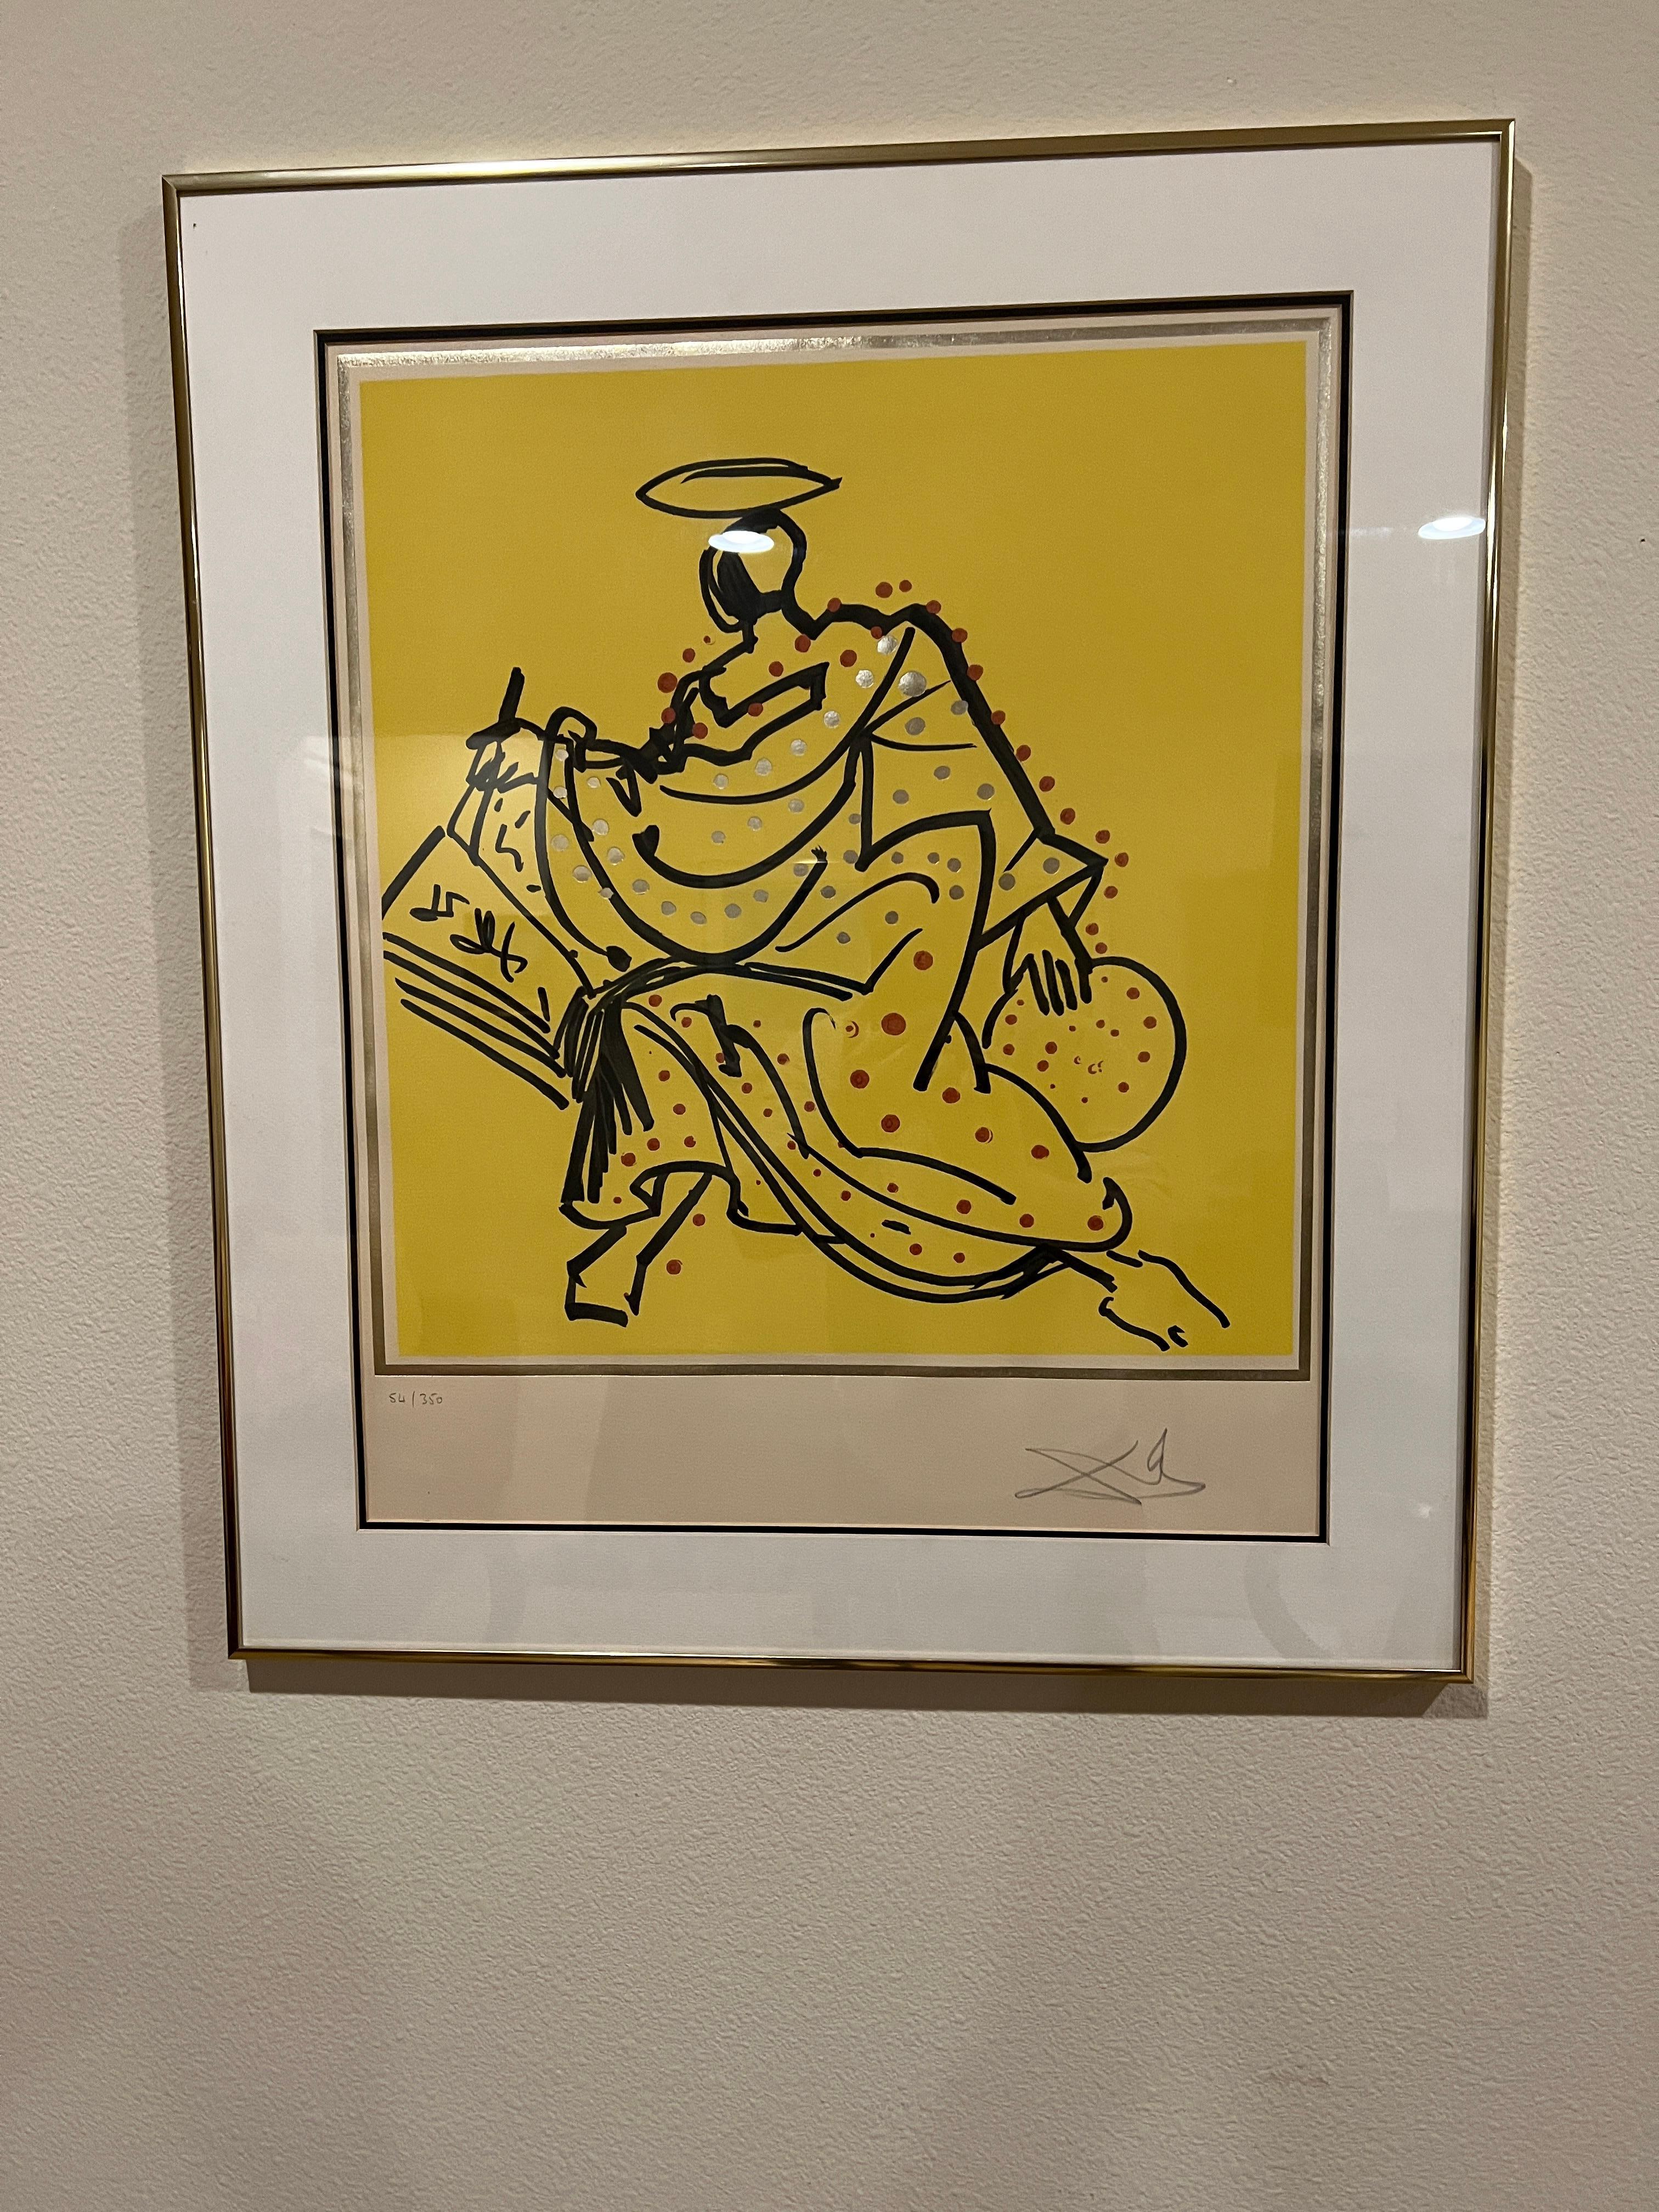 Lithographie auf Arches-Papier mit Prägung und Goldfolie des spanischen surrealistischen Künstlers Salvador Dali. Aus der Suite der Zwölf Apostel von 1977 (manchmal auch als Suite der Ritter der Tafelrunde bezeichnet). Dieses Bild wird manchmal auch